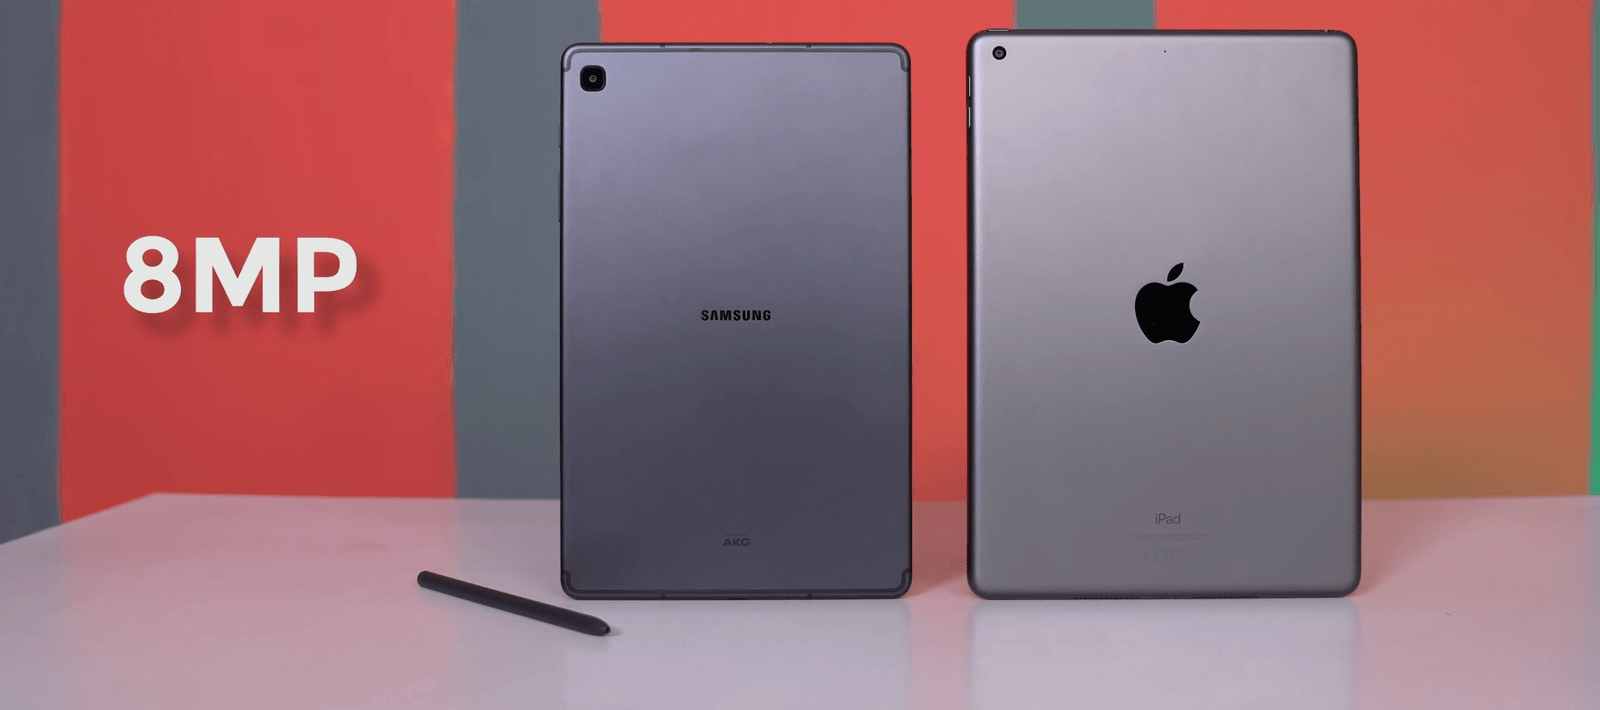 iPad 7th Gen 10.2 inch vs Galaxy Tab S6 Lite Camera